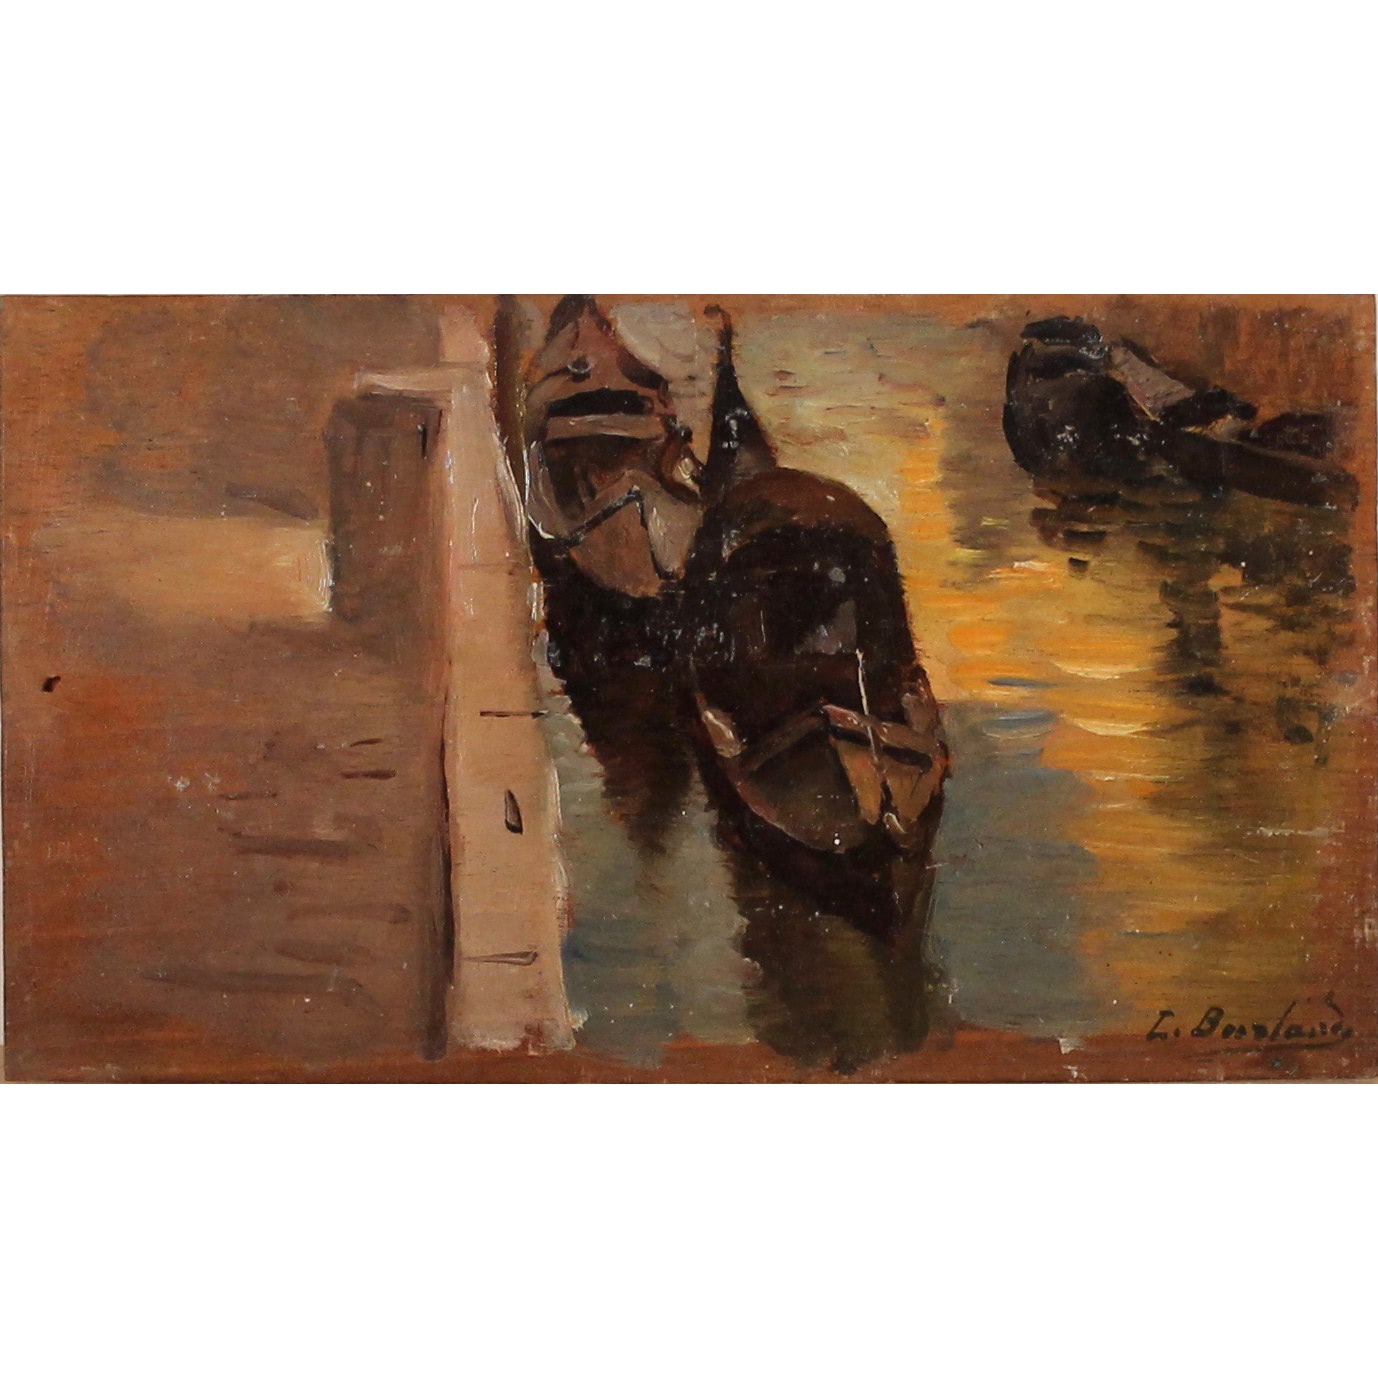 LEOPOLDO BURLANDO (1841/1915) "Gondole all'ormeggio" - "Mooring gondolas"
